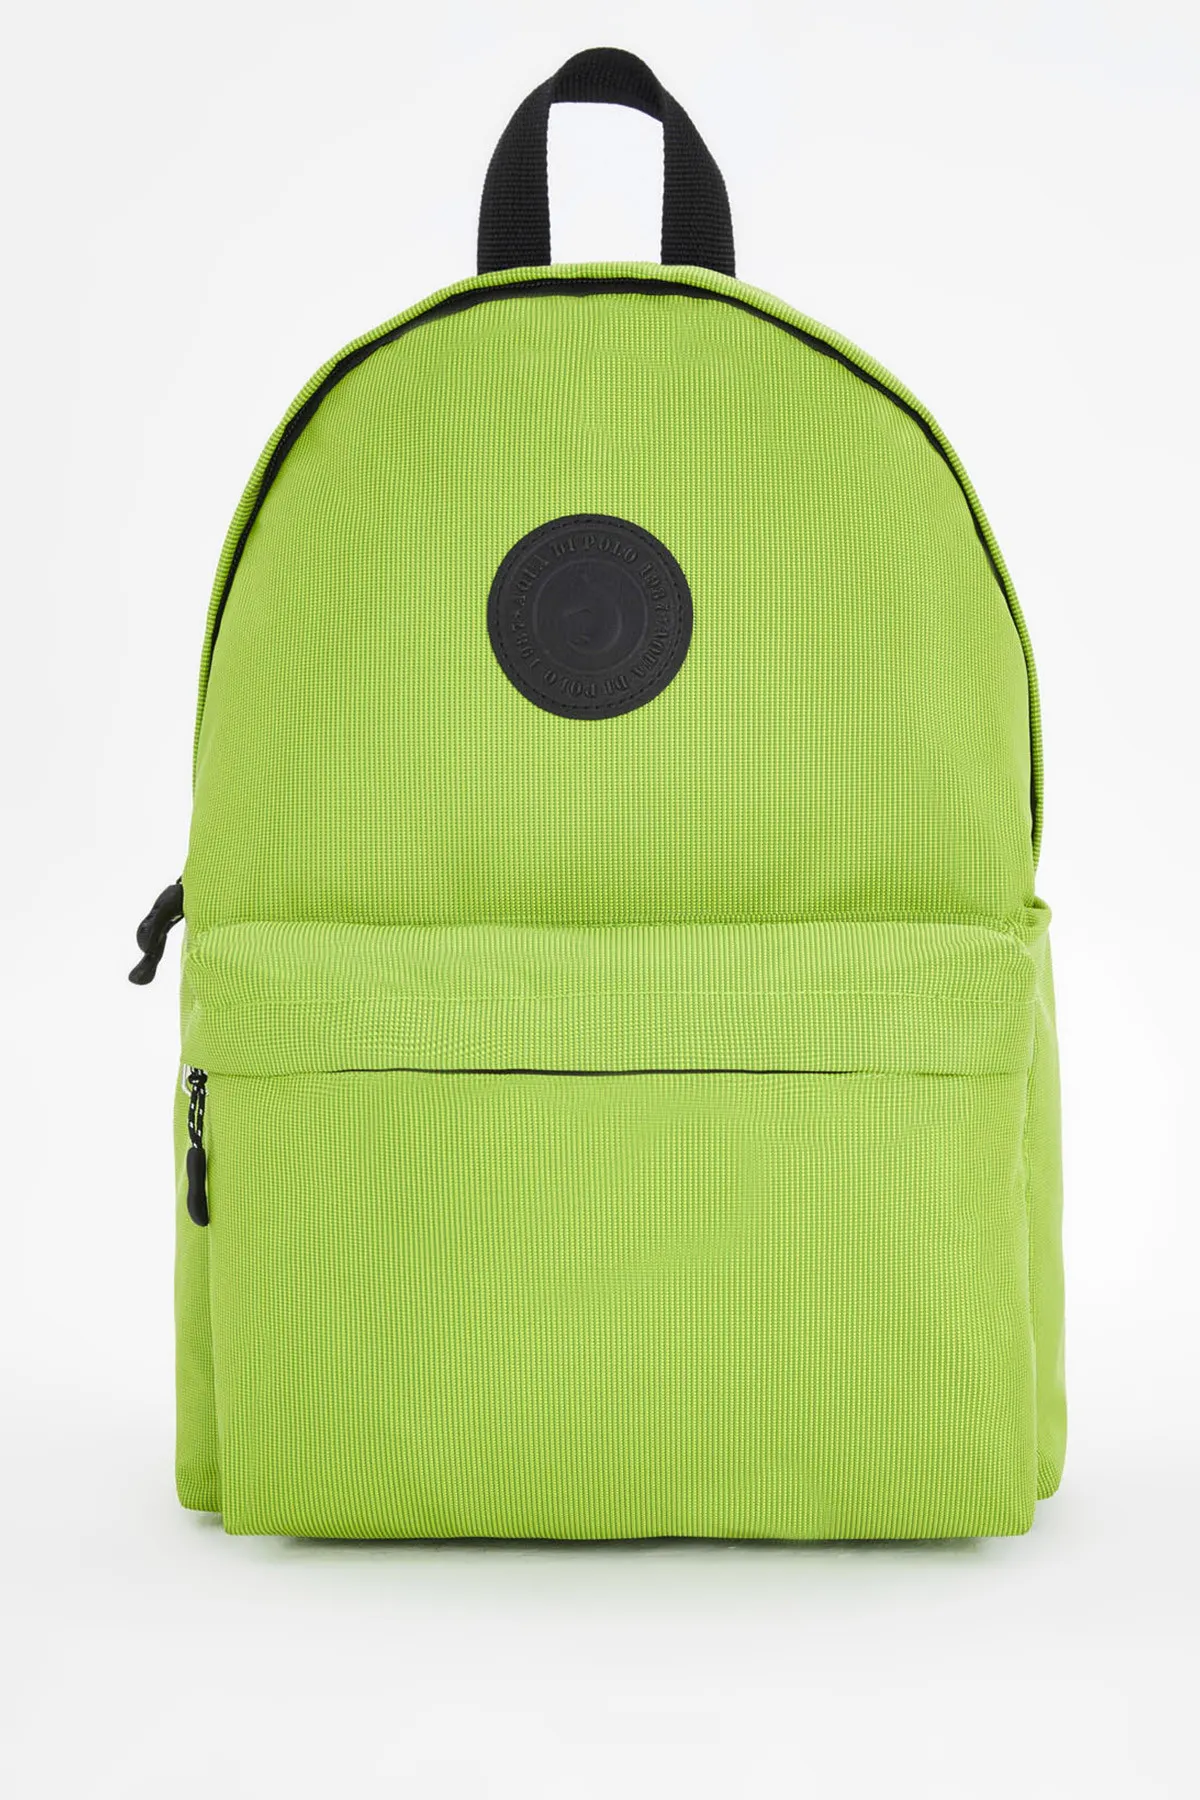 Рюкзак унисекс Di Polo apba0126 зеленый#5